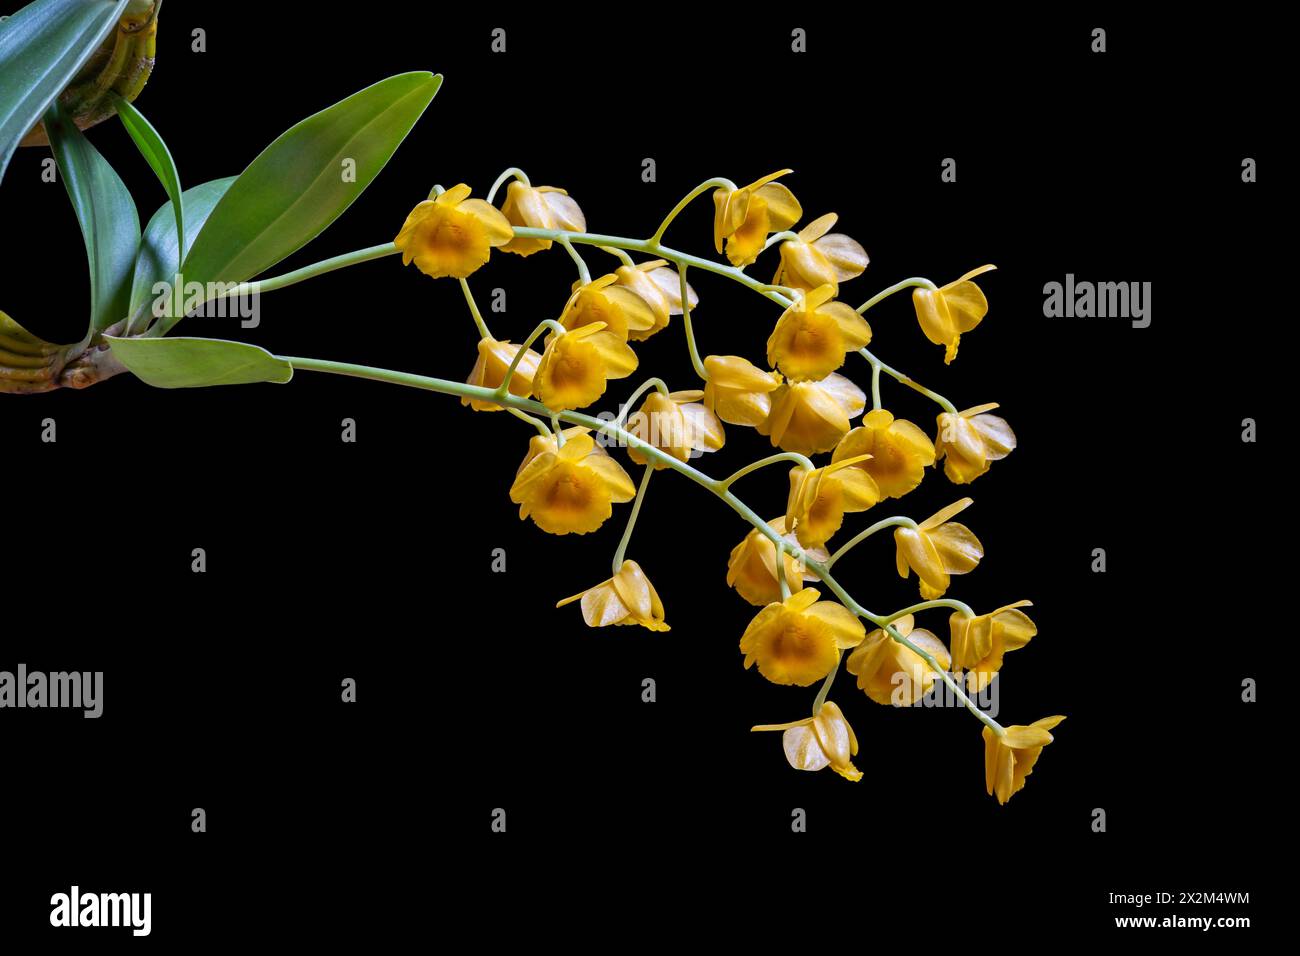 Vue rapprochée de l'espèce d'orchidée épiphyte dendrobium chrysotoxum en floraison avec un amas de fleurs orange jaune vif isolé sur fond noir Banque D'Images